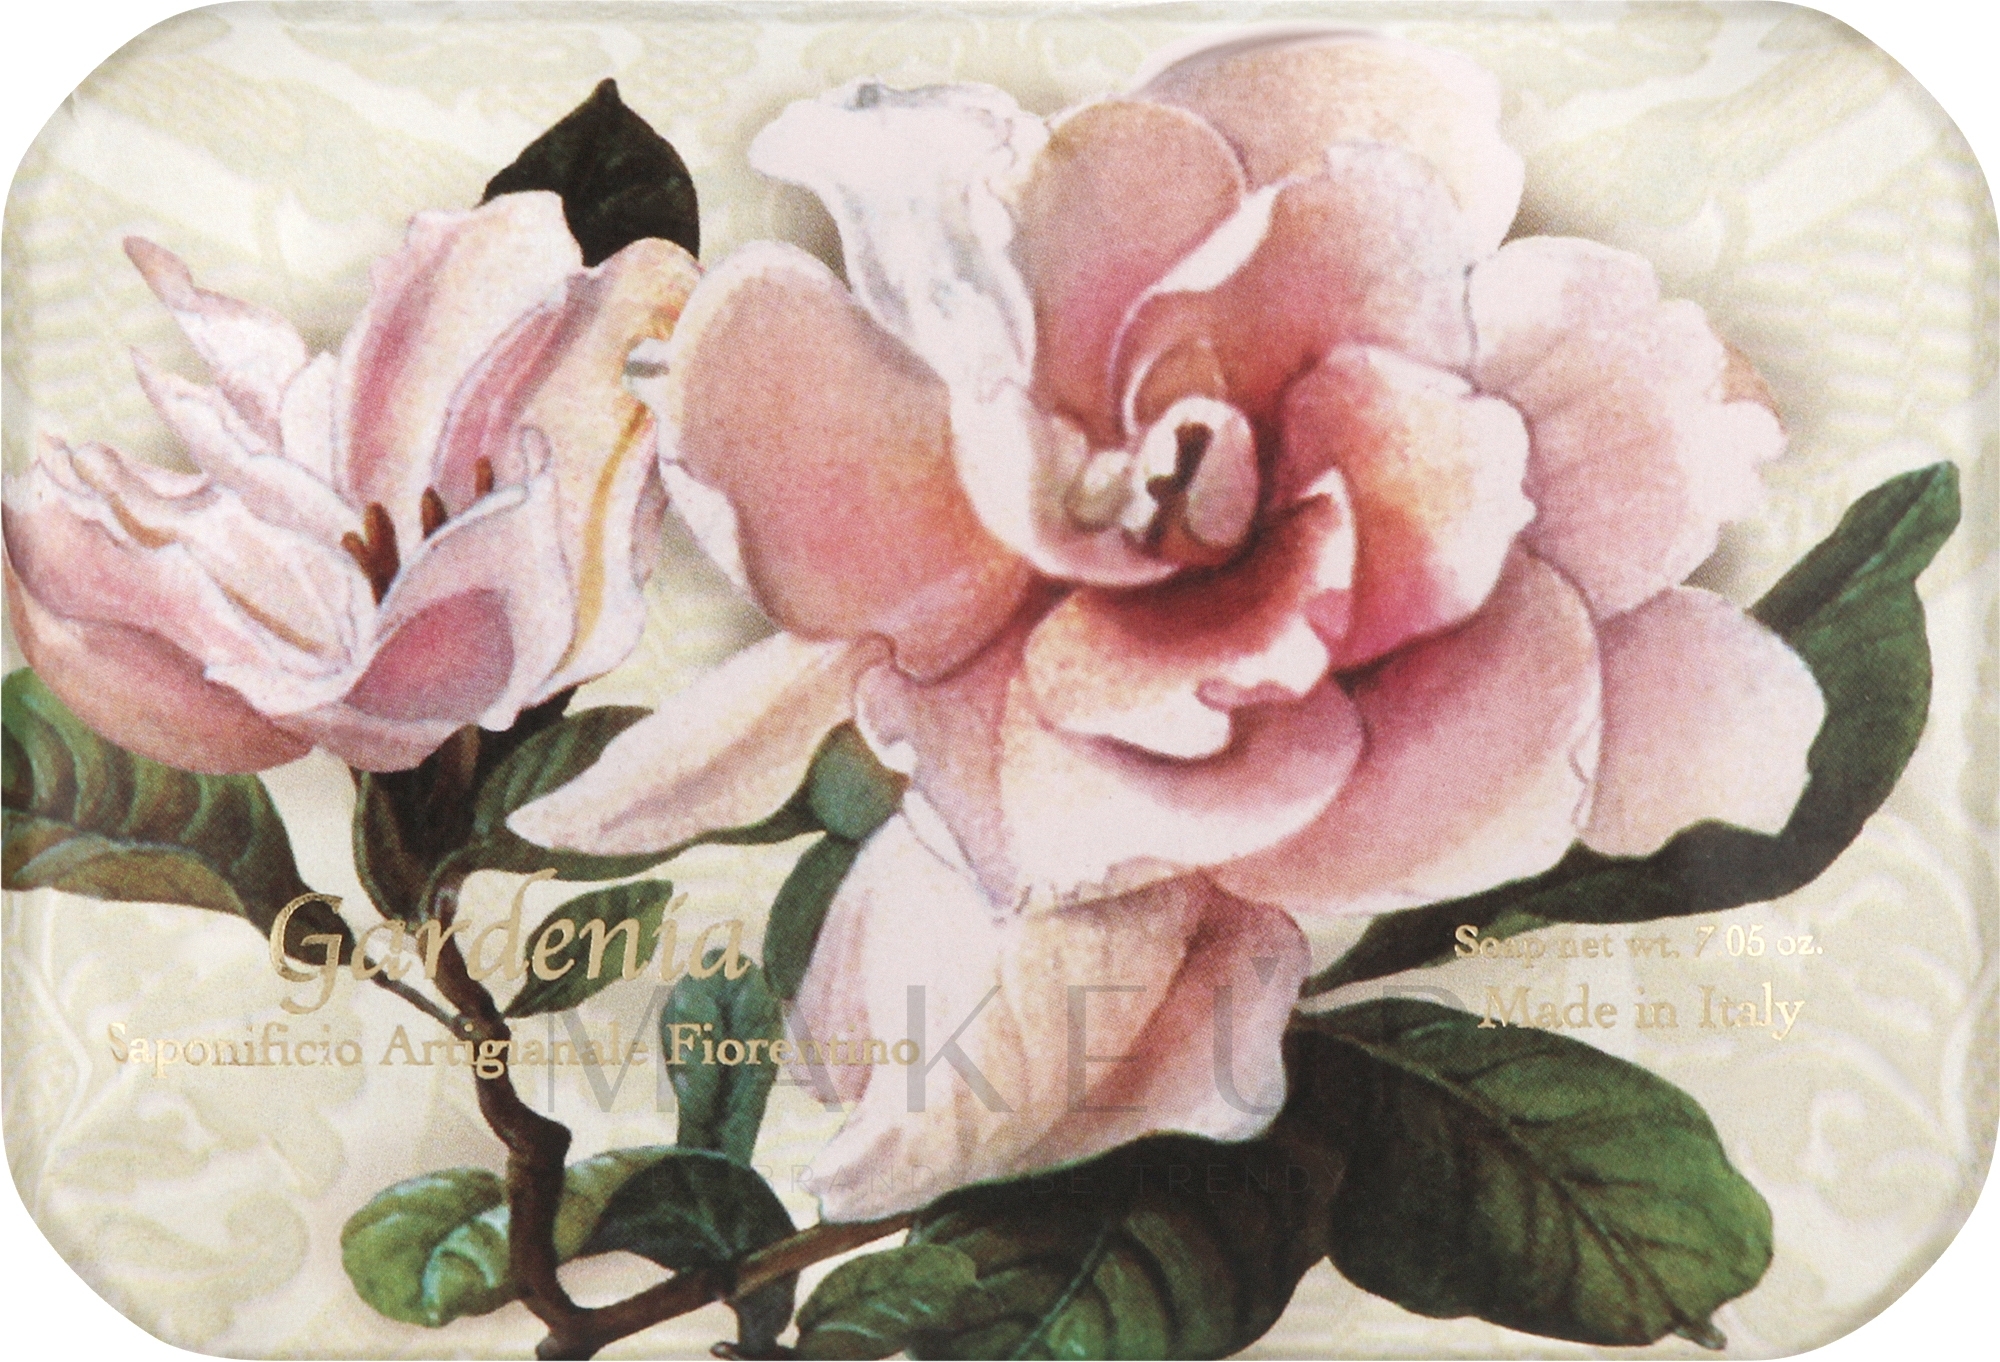 Naturseife Gardenia - Saponificio Artigianale Fiorentino Gardenia Sinfonia di Fiori Collection — Bild 200 g